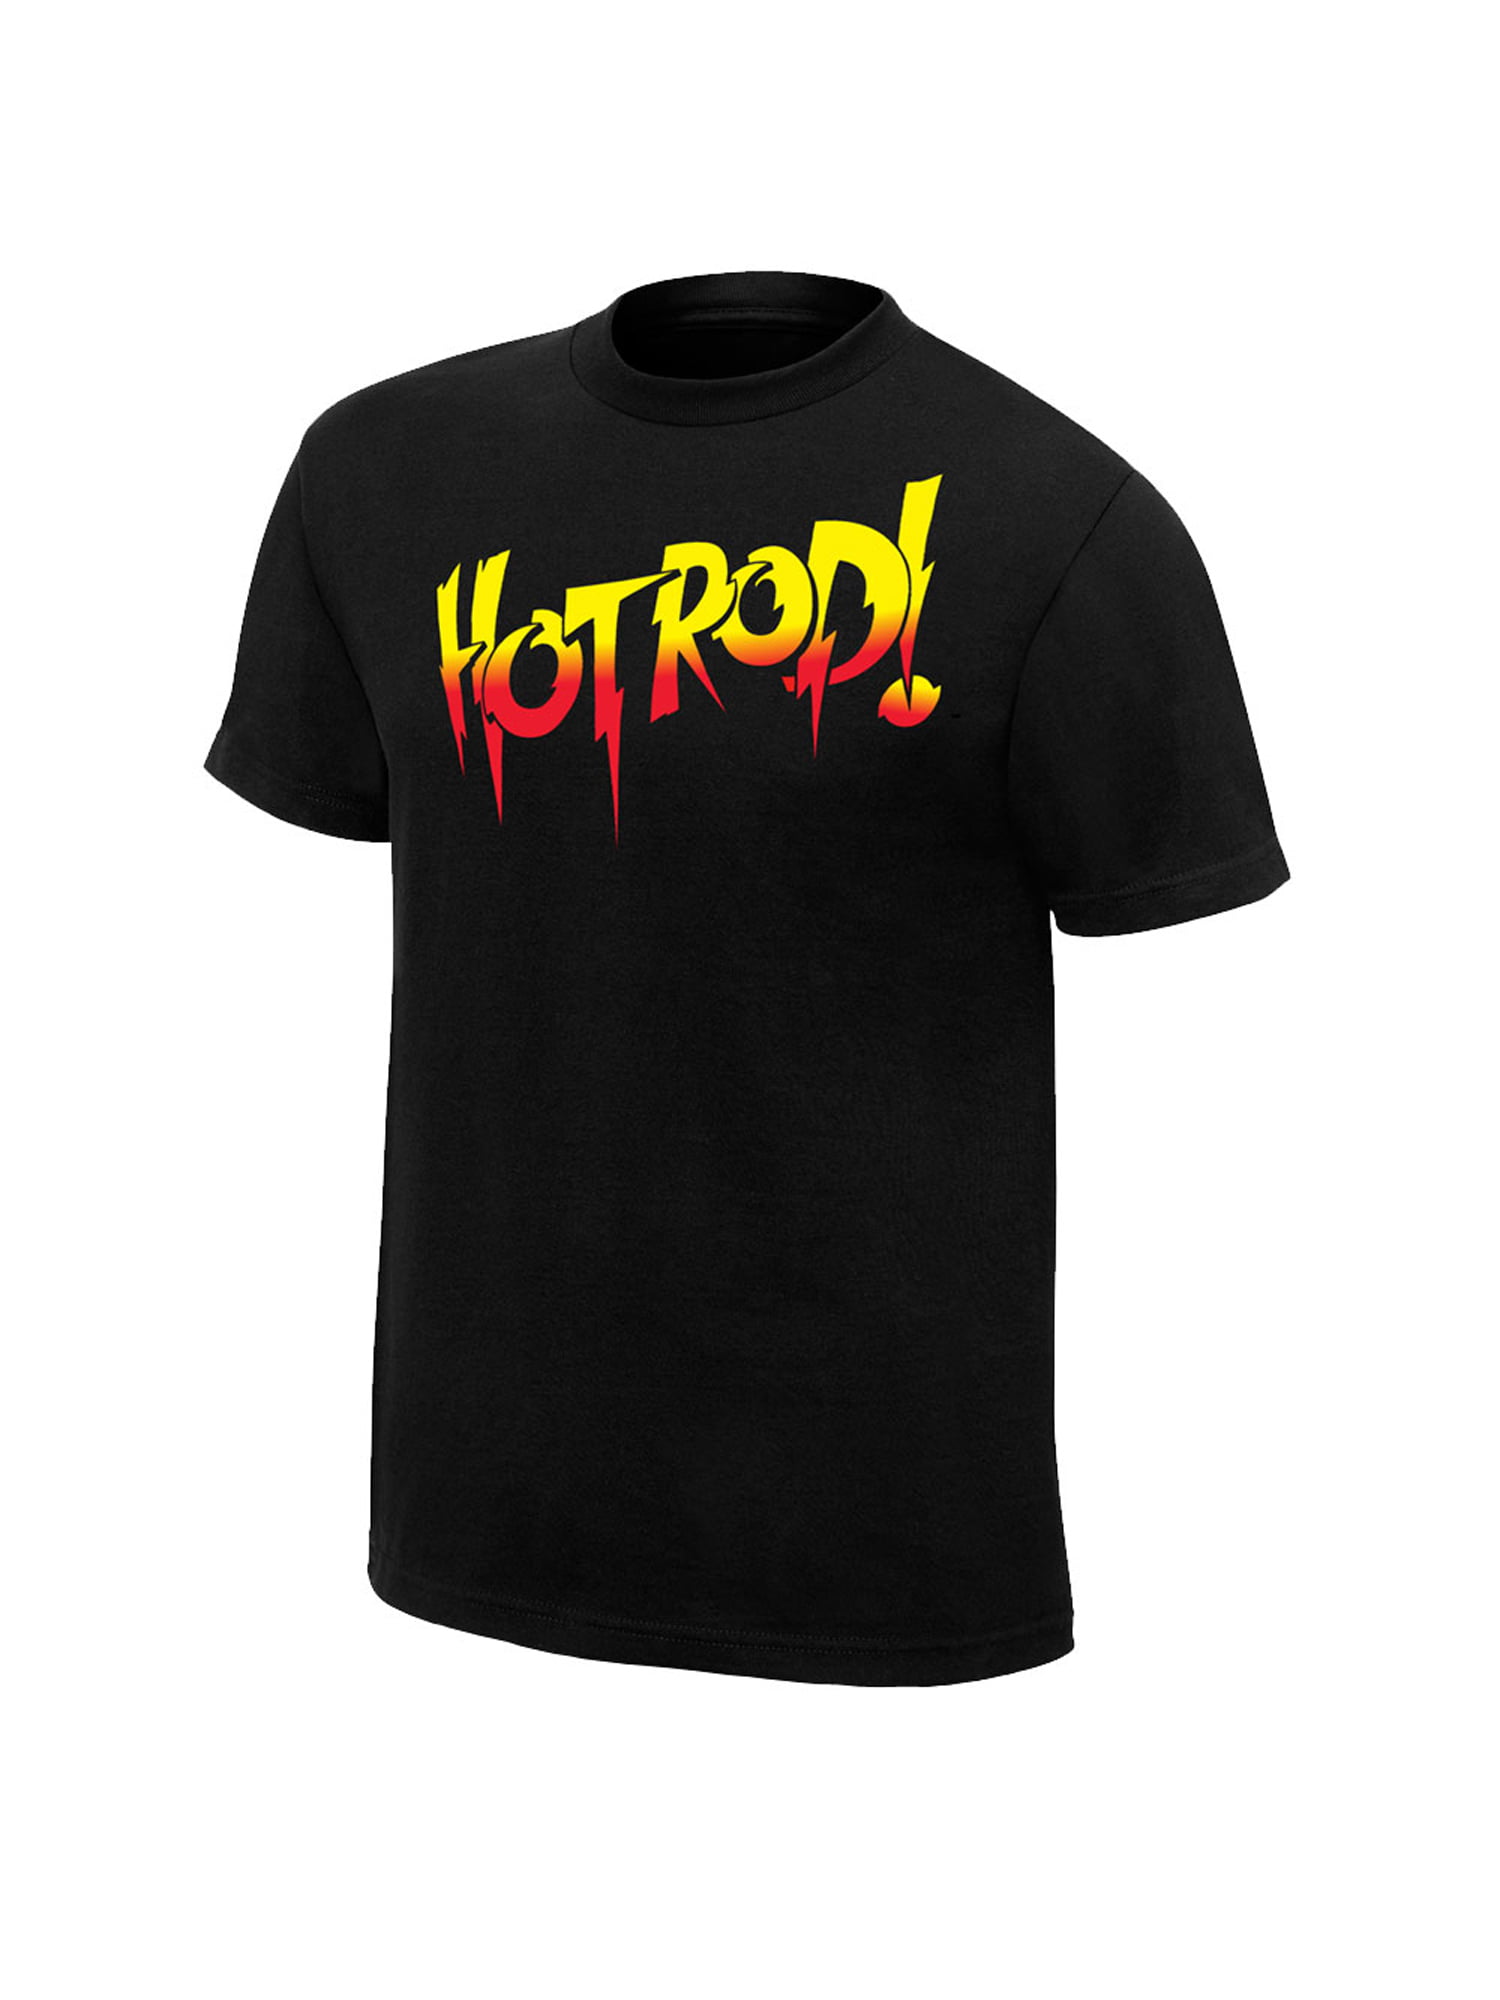 WWE Rowdy Roddy Piper  'Hotrod' Custom Shirt For Mattel Figures.. 